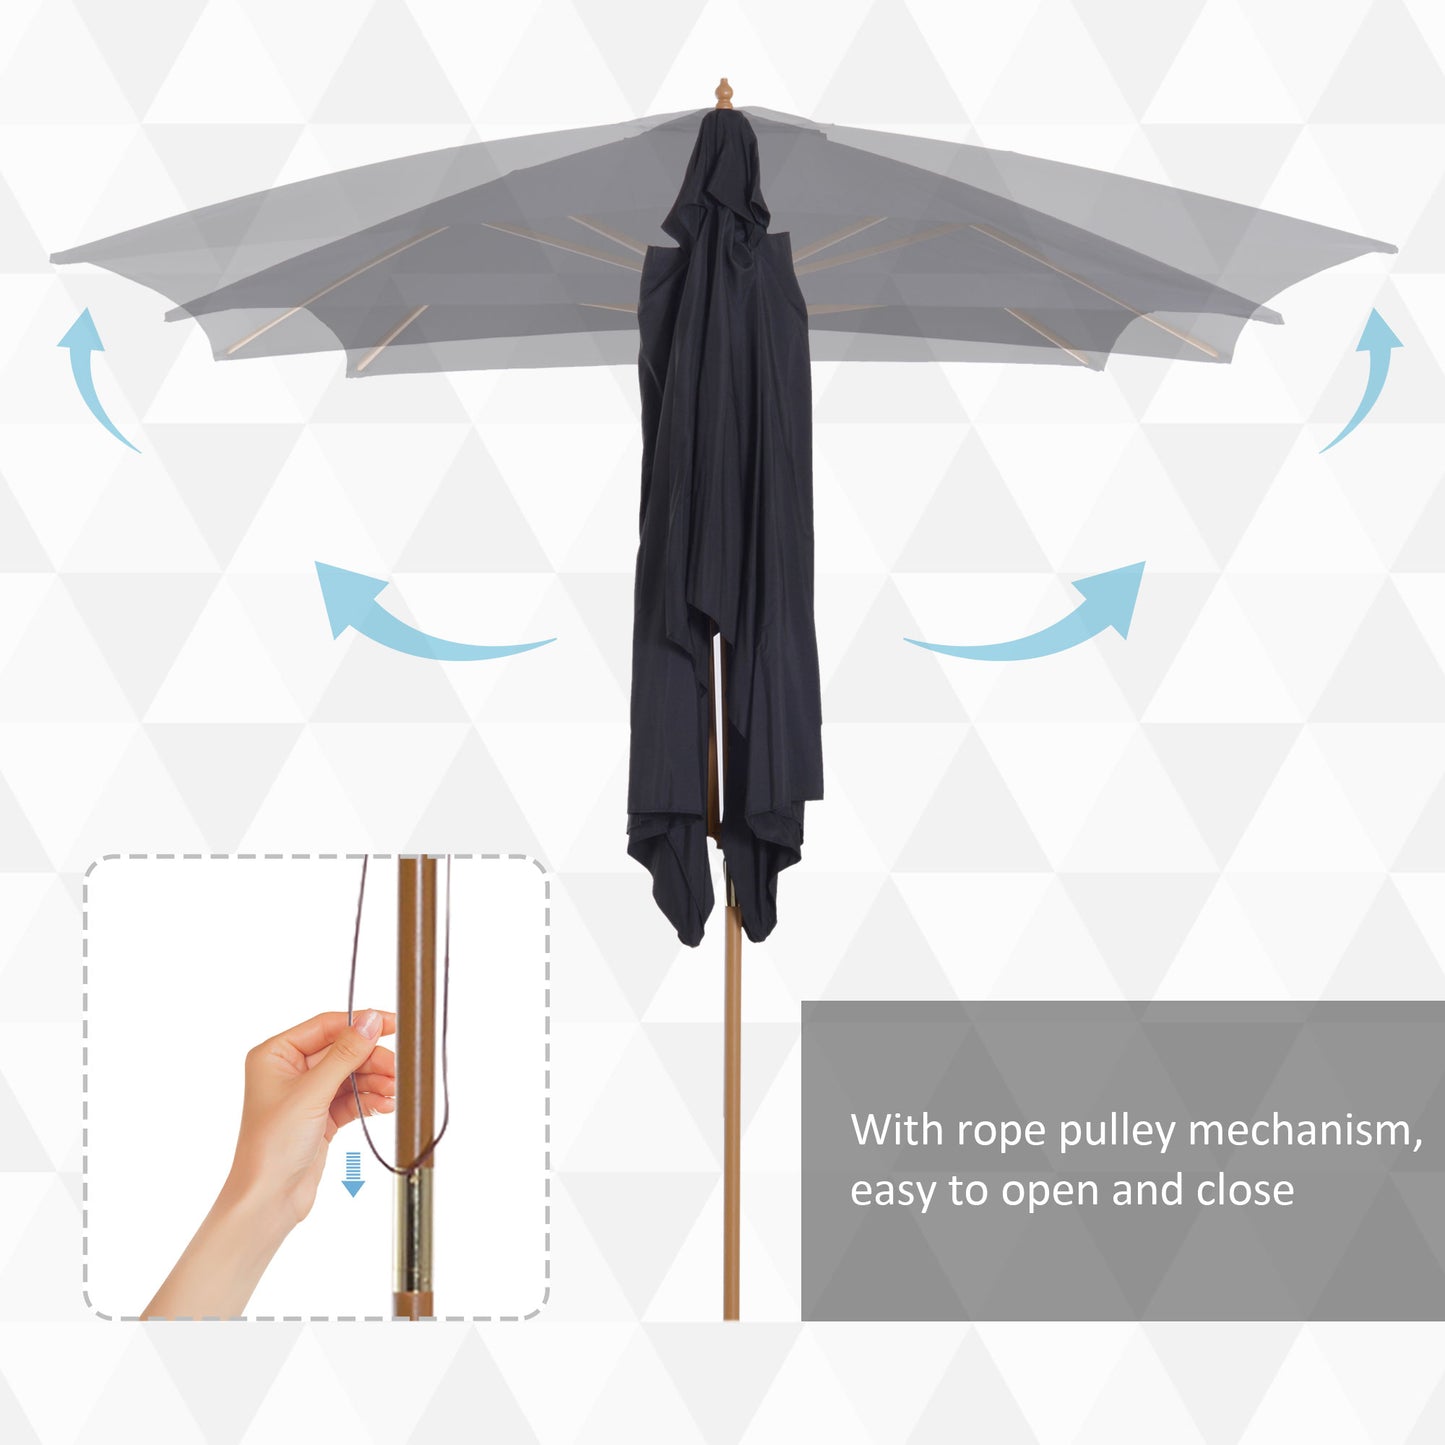 Outsunny 295L x 200W x 255Hcm Wooden Umbrella Parasol-Black